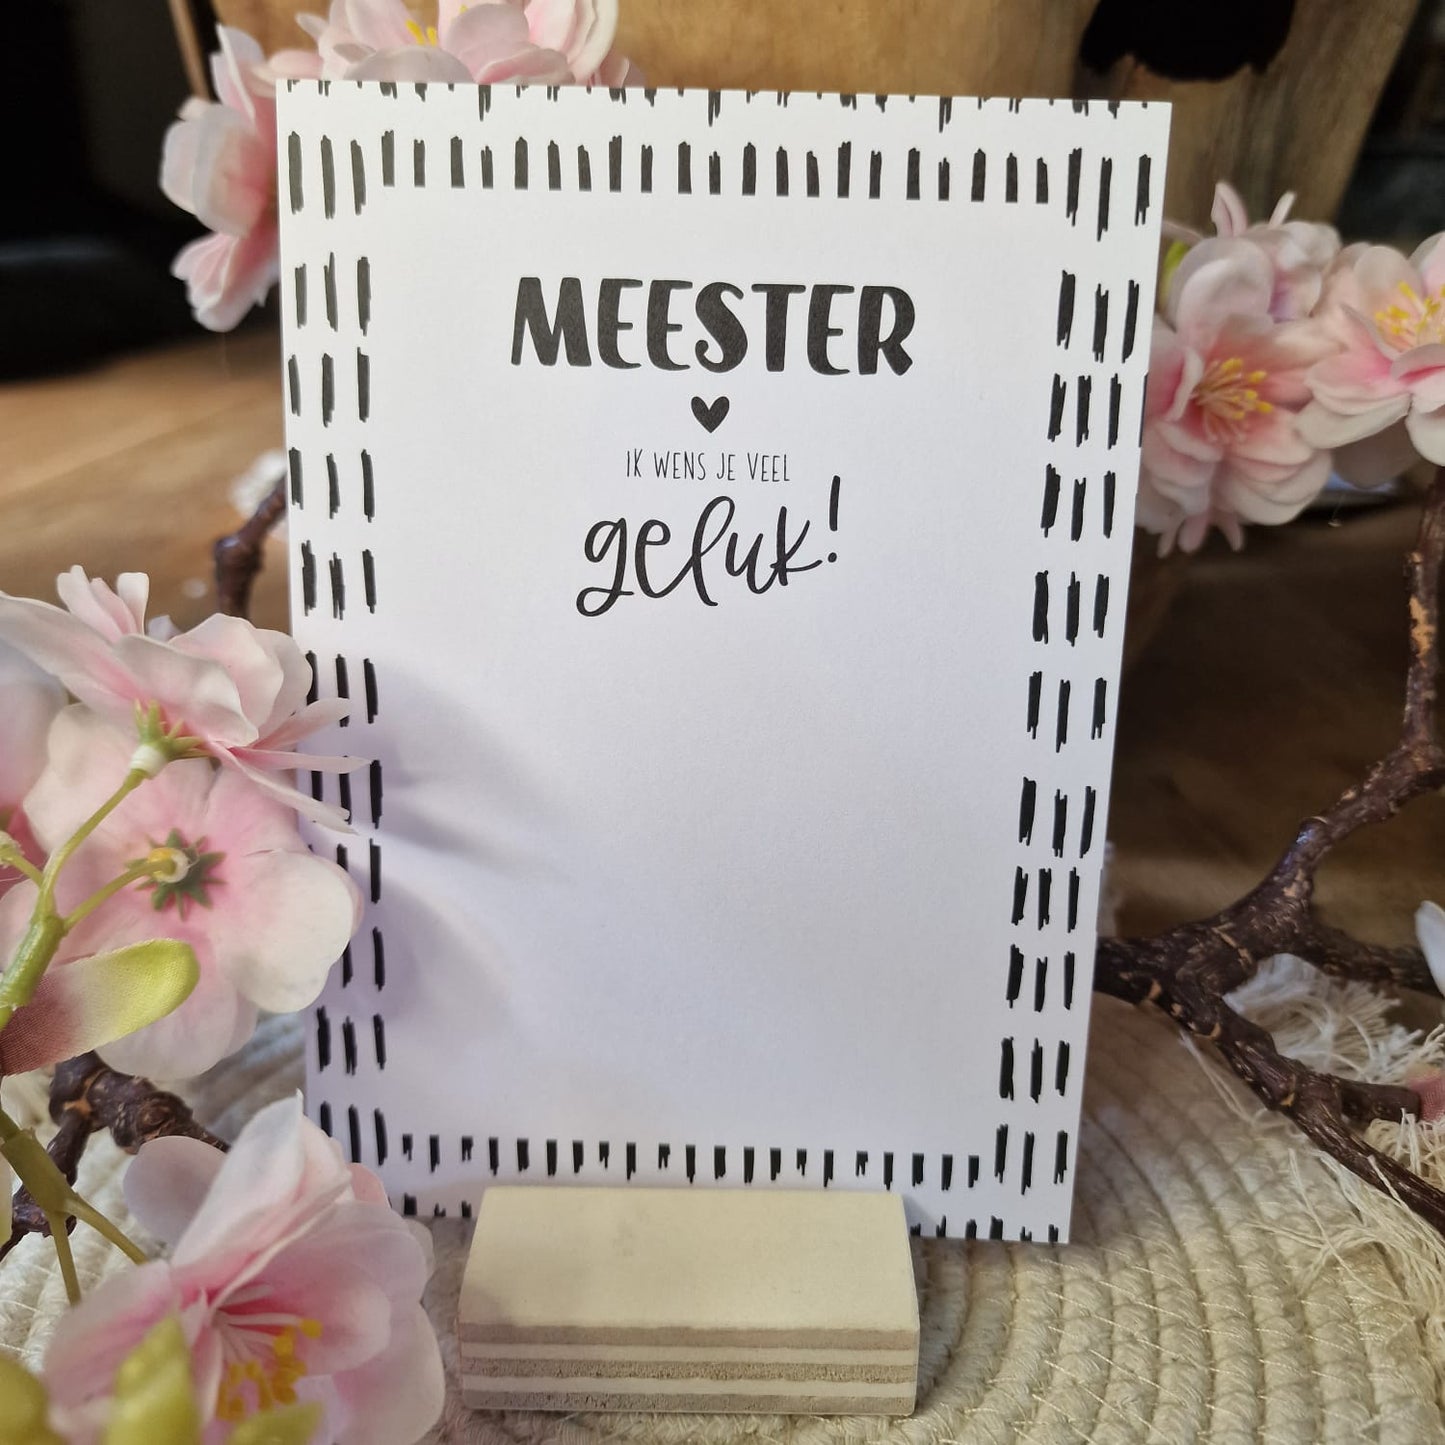 Ansichtkaart 'Meester, ik wens je veel geluk!'